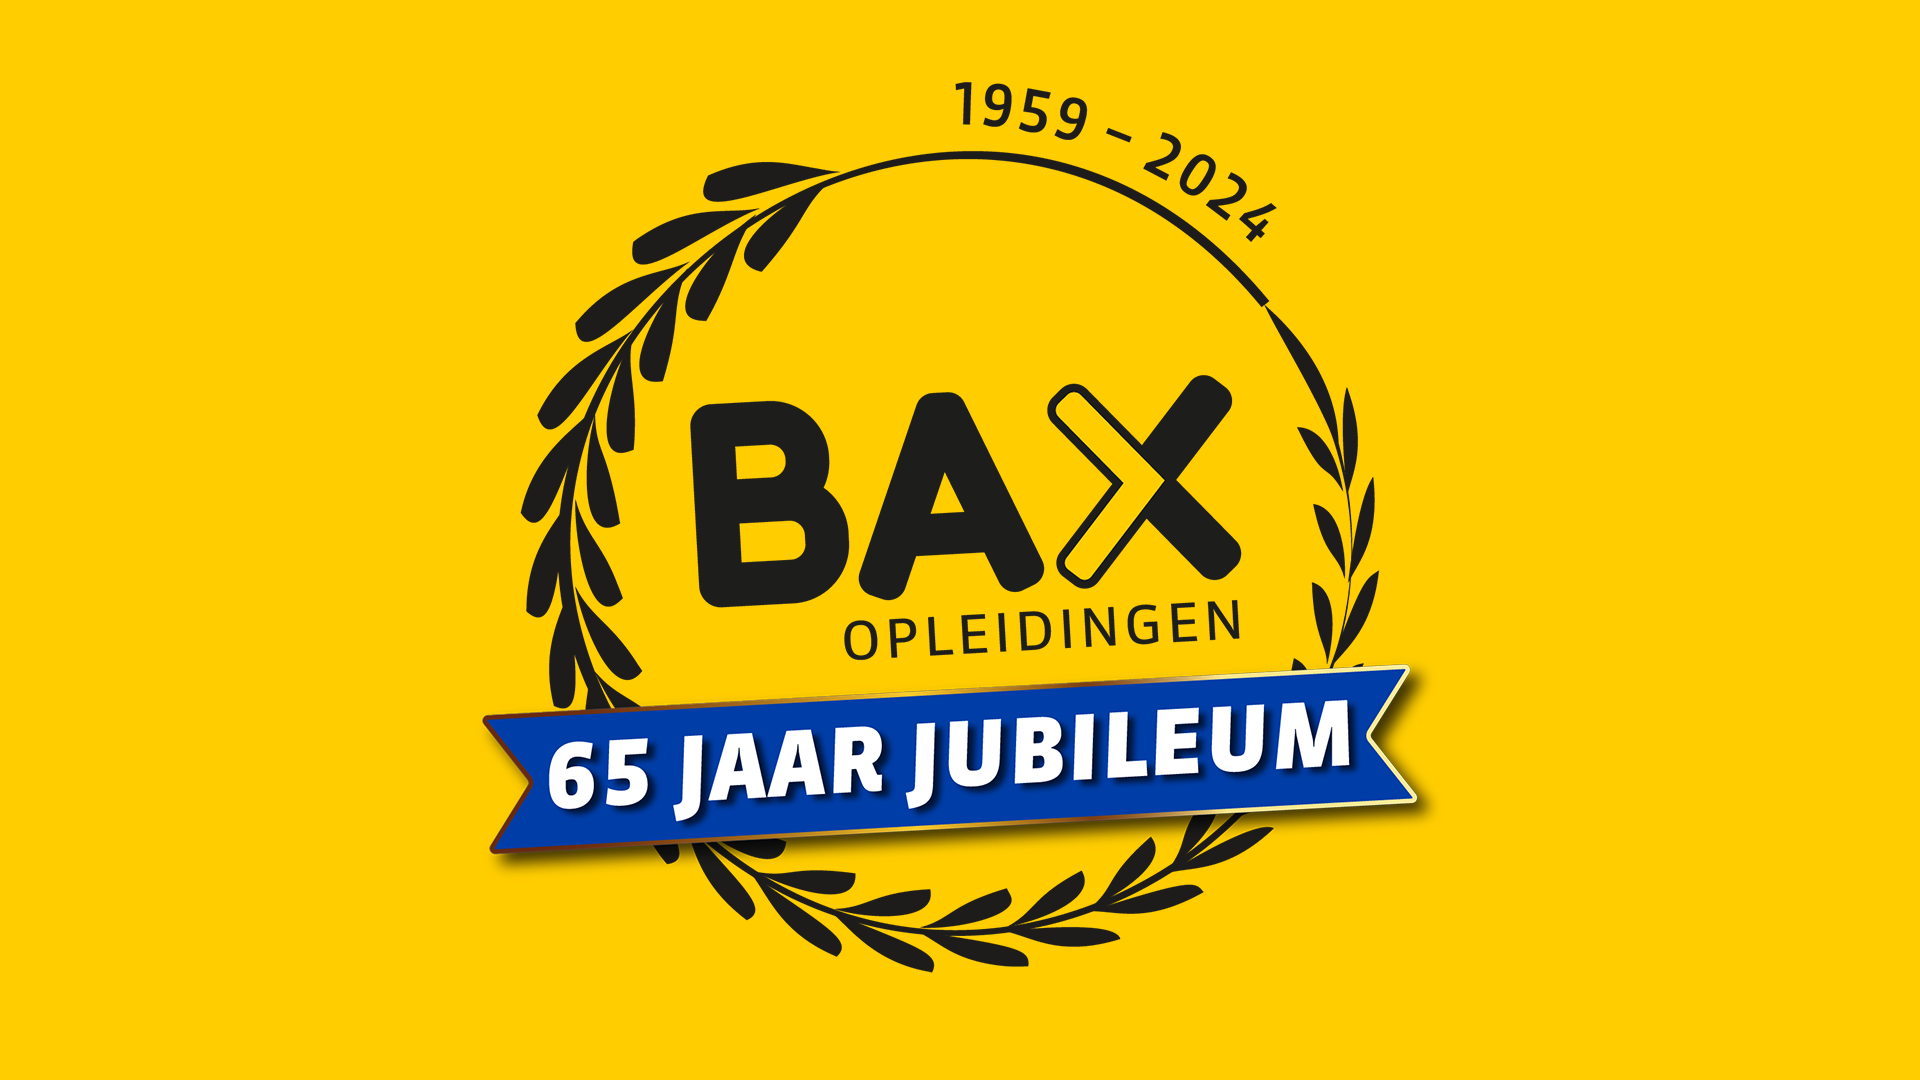 Bax Opleidingen viert dit jaar het 65 jaar jubileum tijdens open dag!